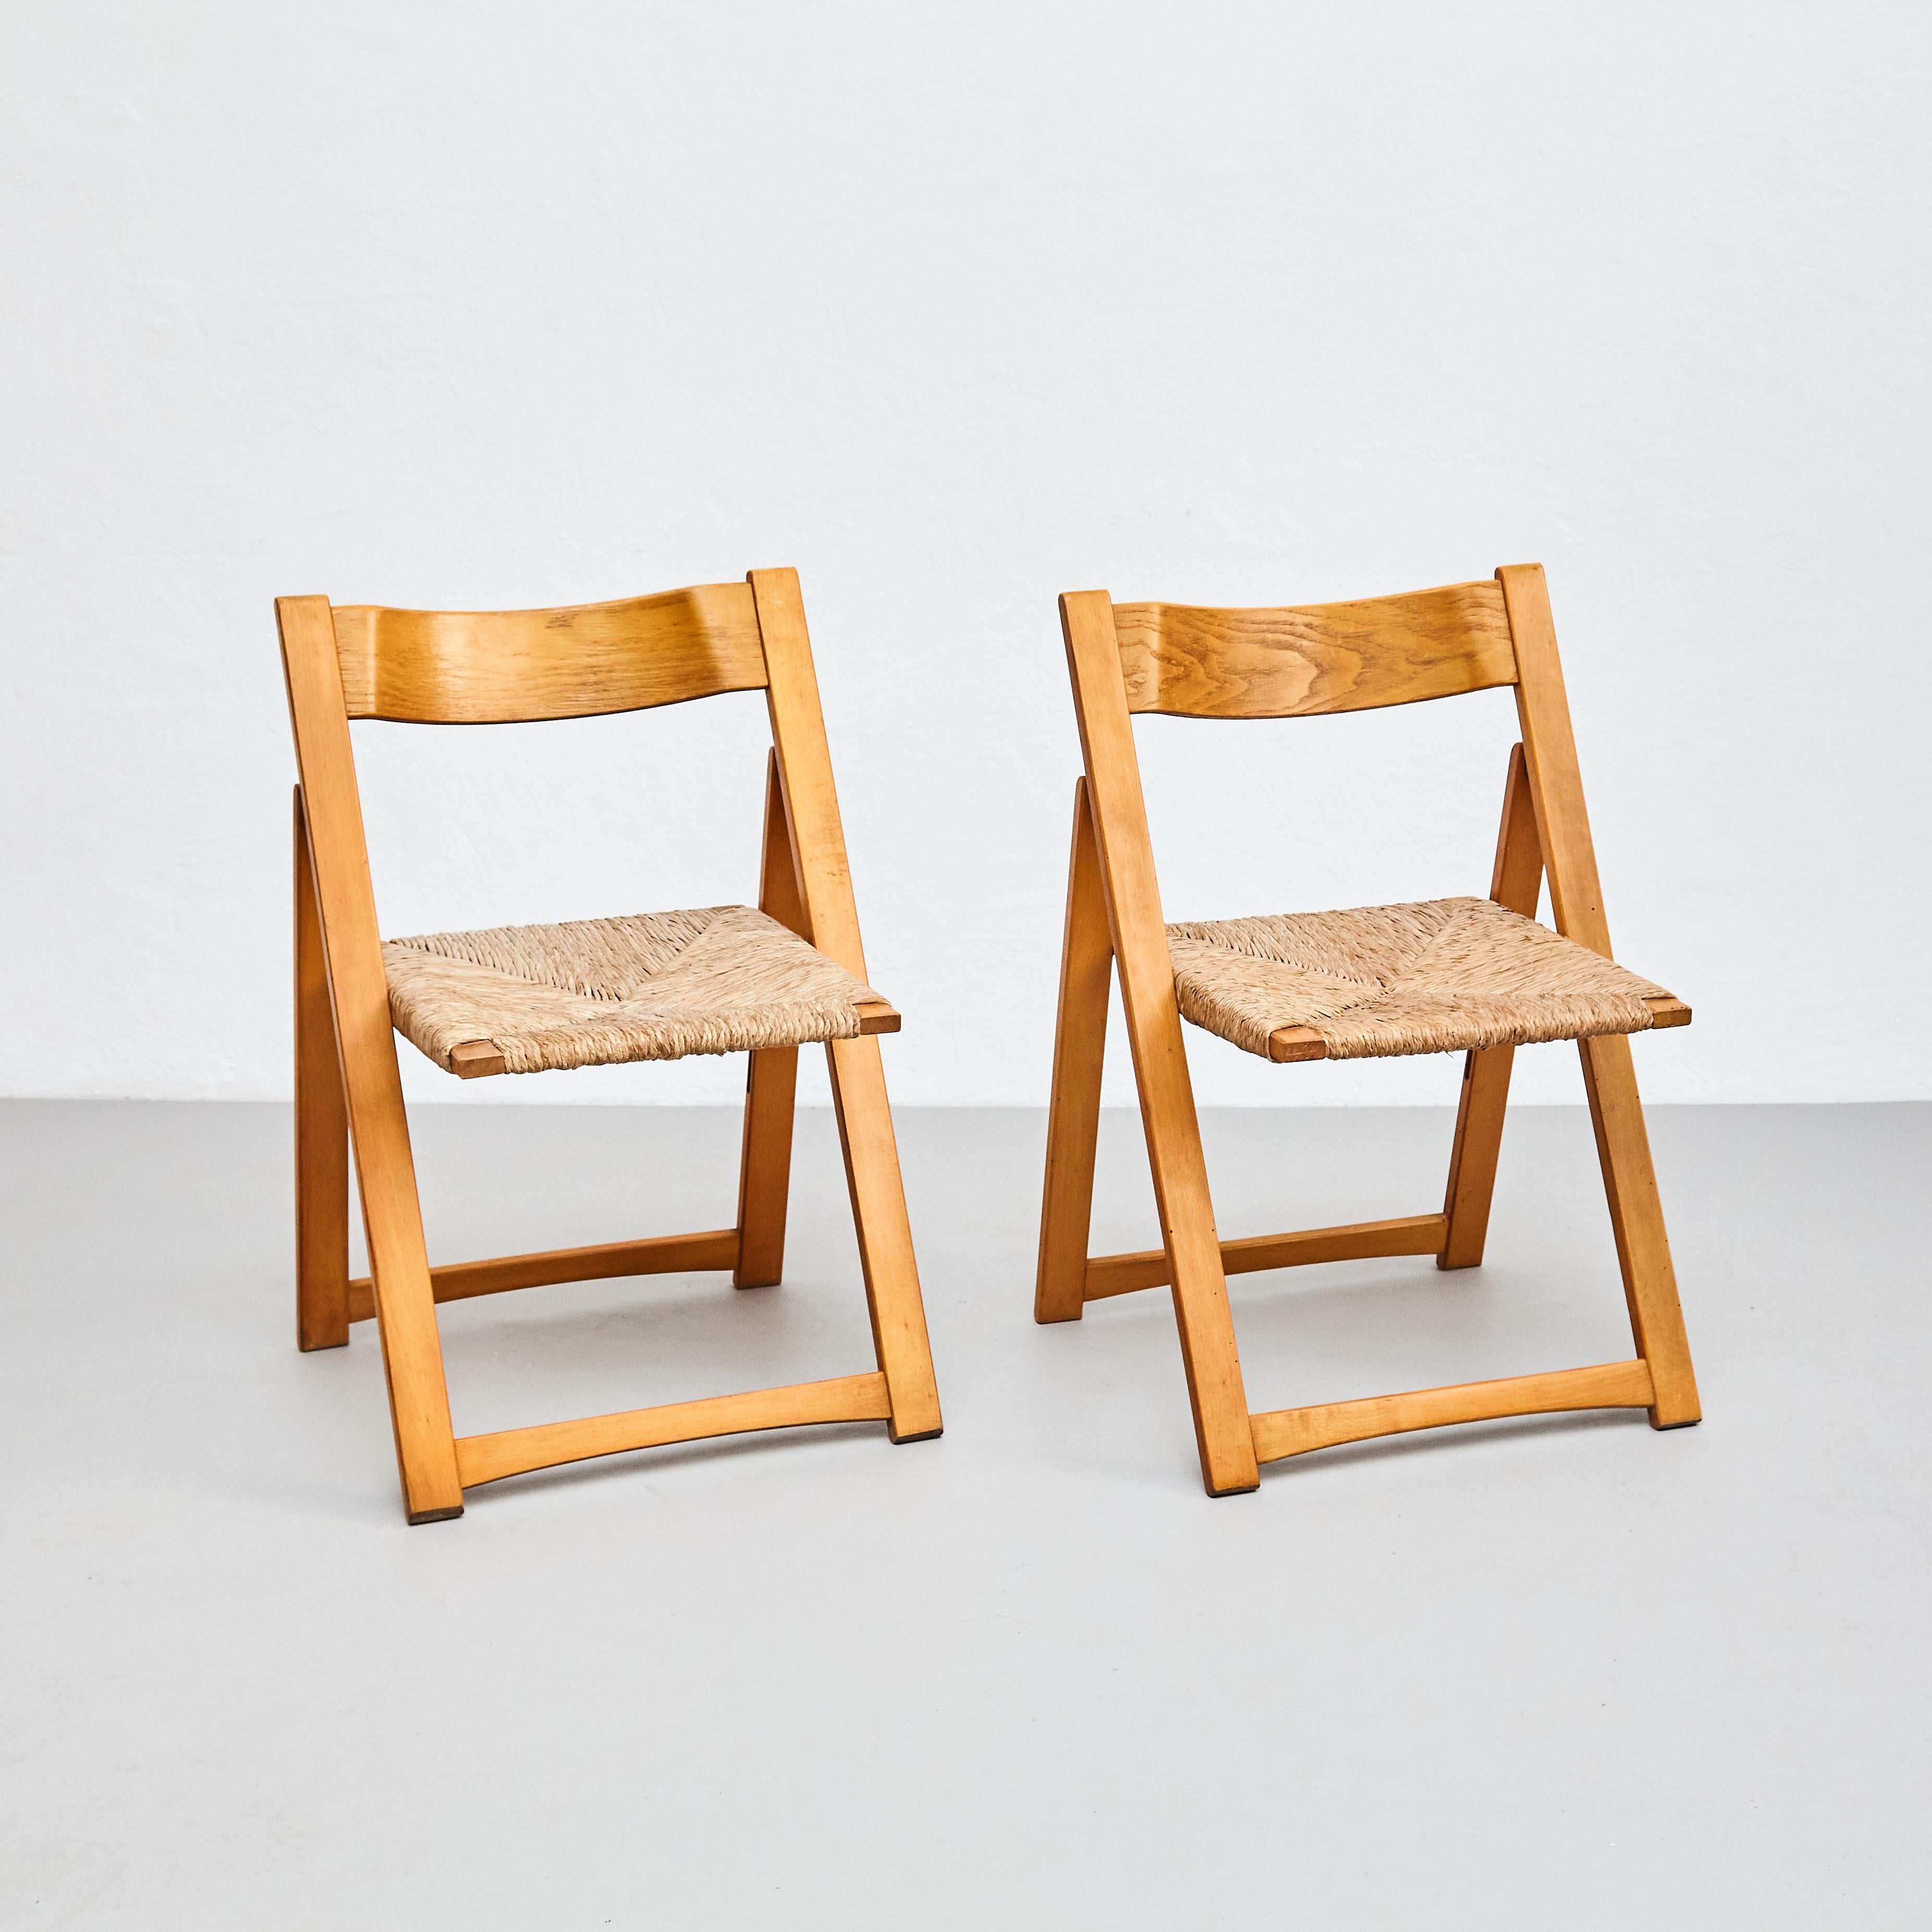 Paire de chaises pliantes rationalistes en rotin et bois.

Fabriqué en France, vers 1960.

En état d'origine avec une usure mineure conforme à l'âge et à l'utilisation, préservant une belle patine.

Matériaux : 
Bois, rotin 

Dimensions :